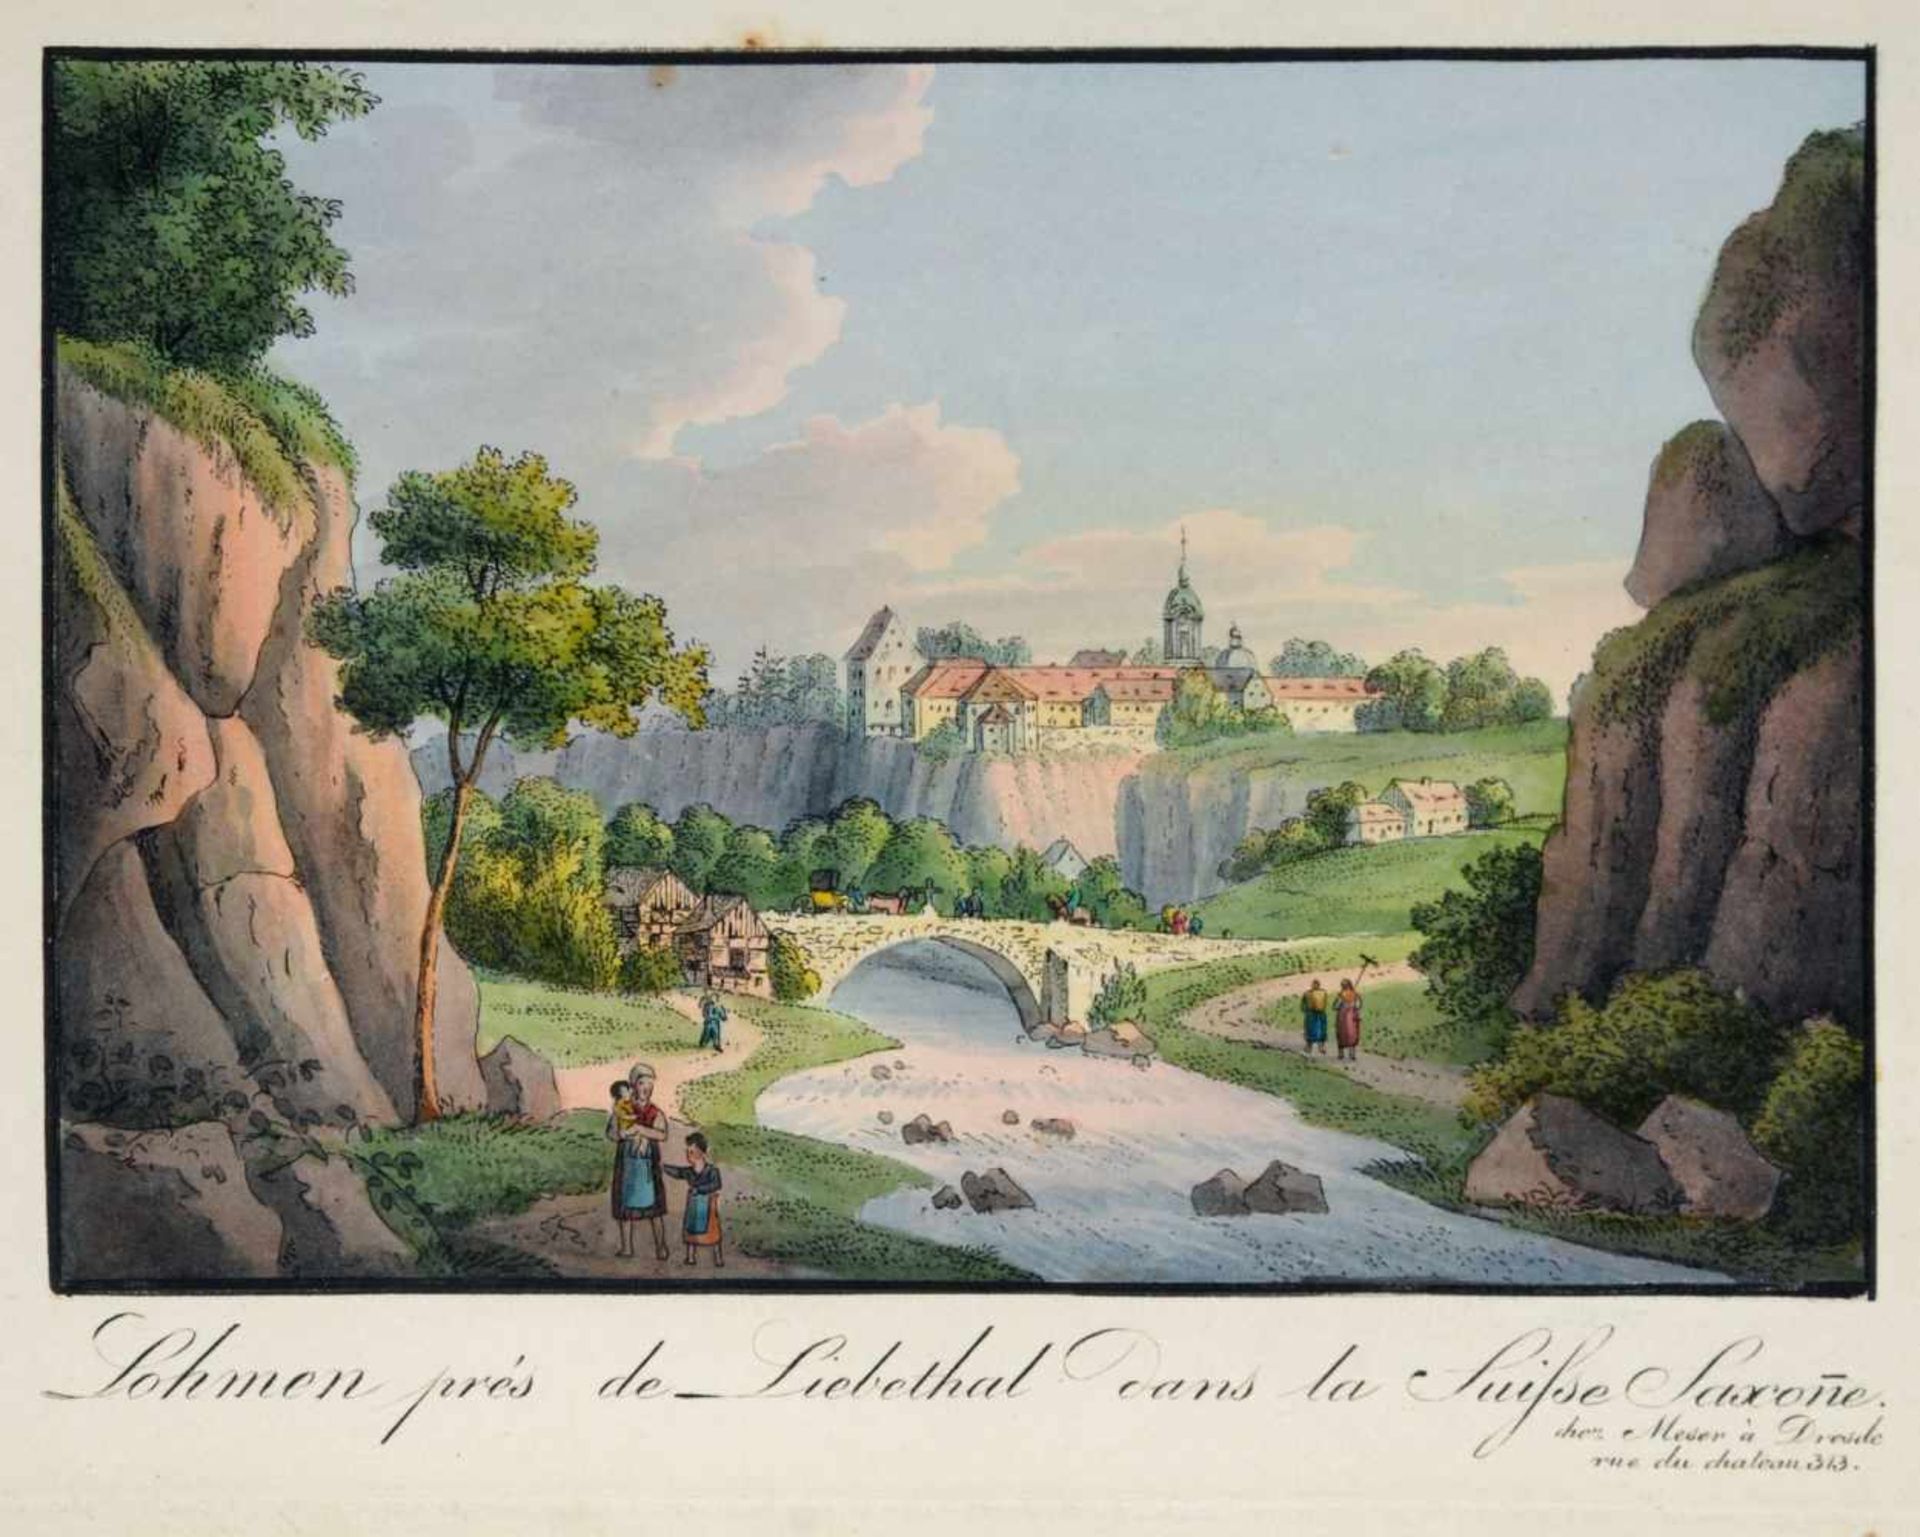 C. F. Meser "Lohmen prés de Liebethal dans la Suisse Saxone". Um 1830.C. F. Meser 19. Jh.